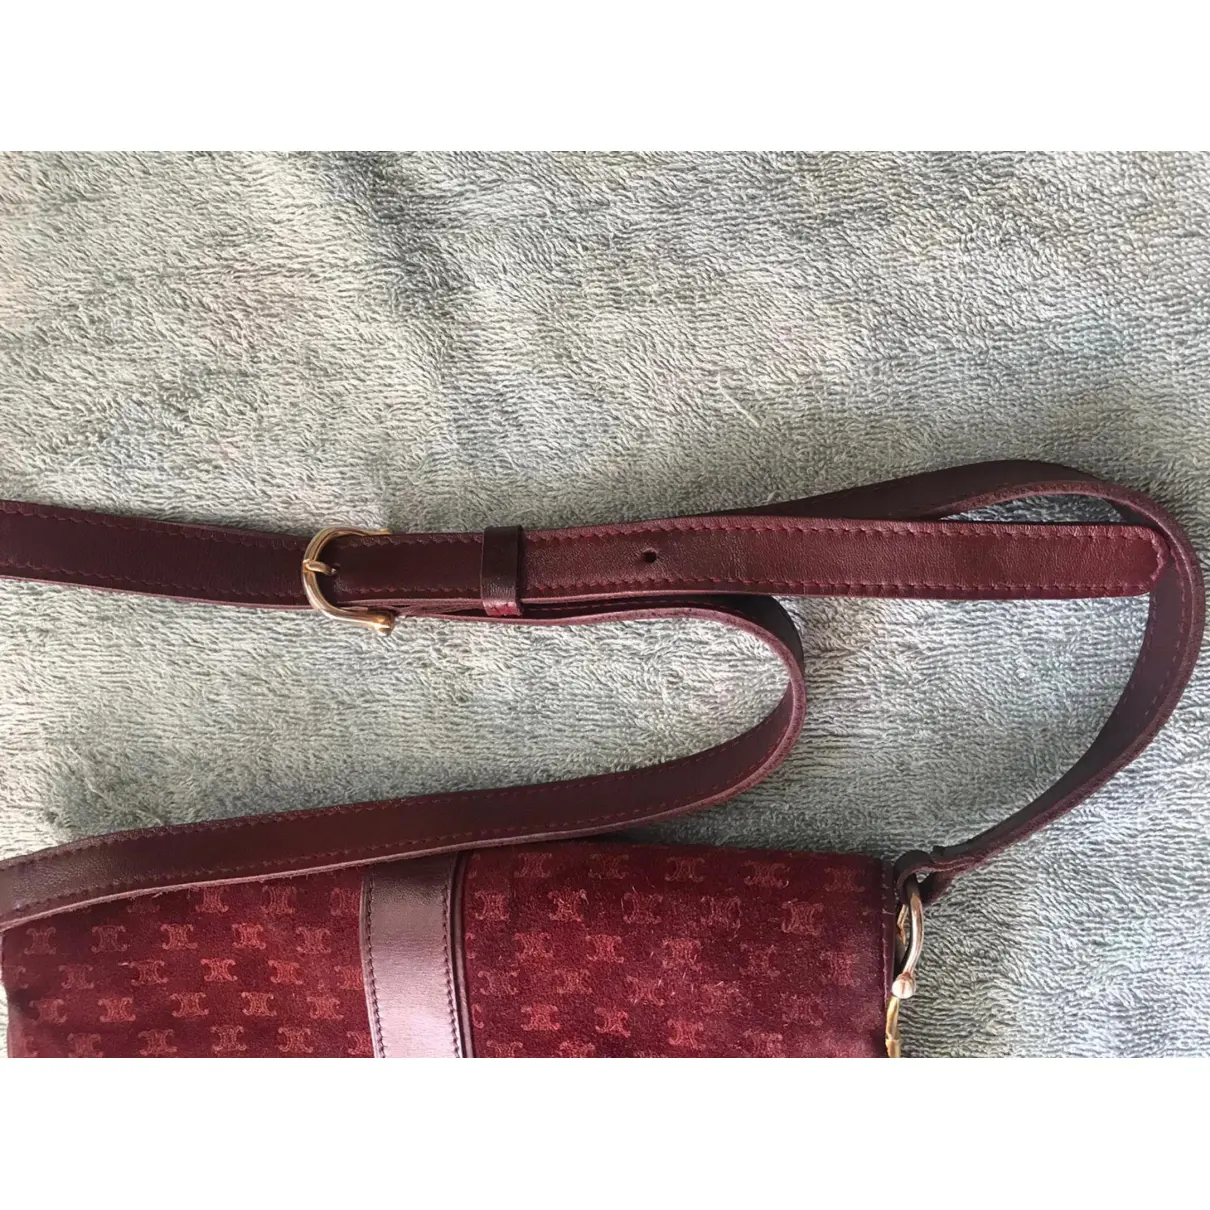 Buy Celine Triomphe Vintage leather handbag online - Vintage